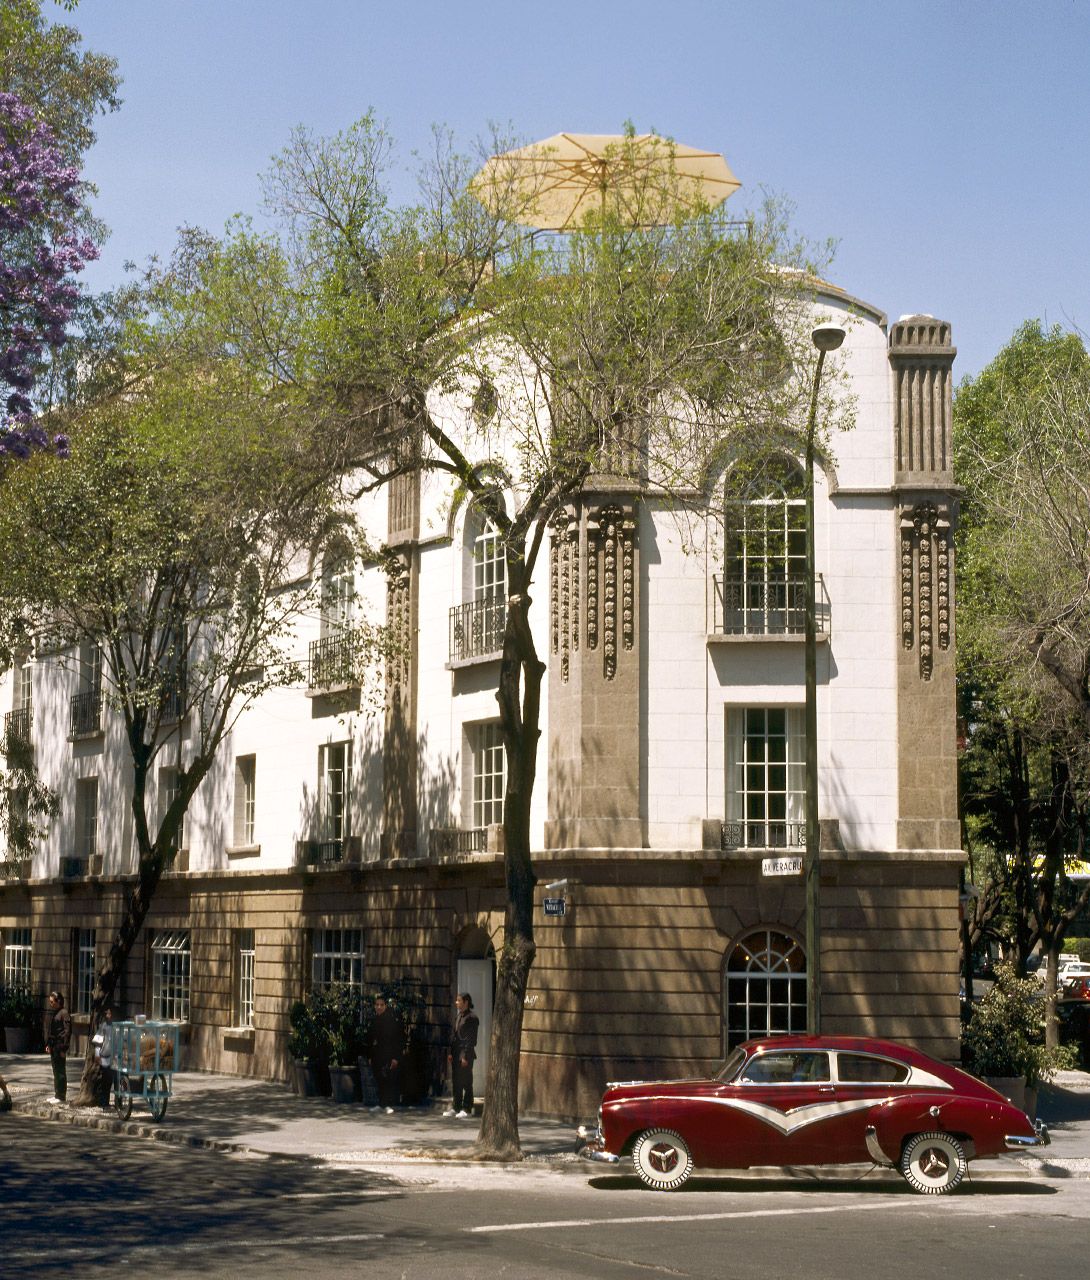 Condesa DF Building in Mexico City